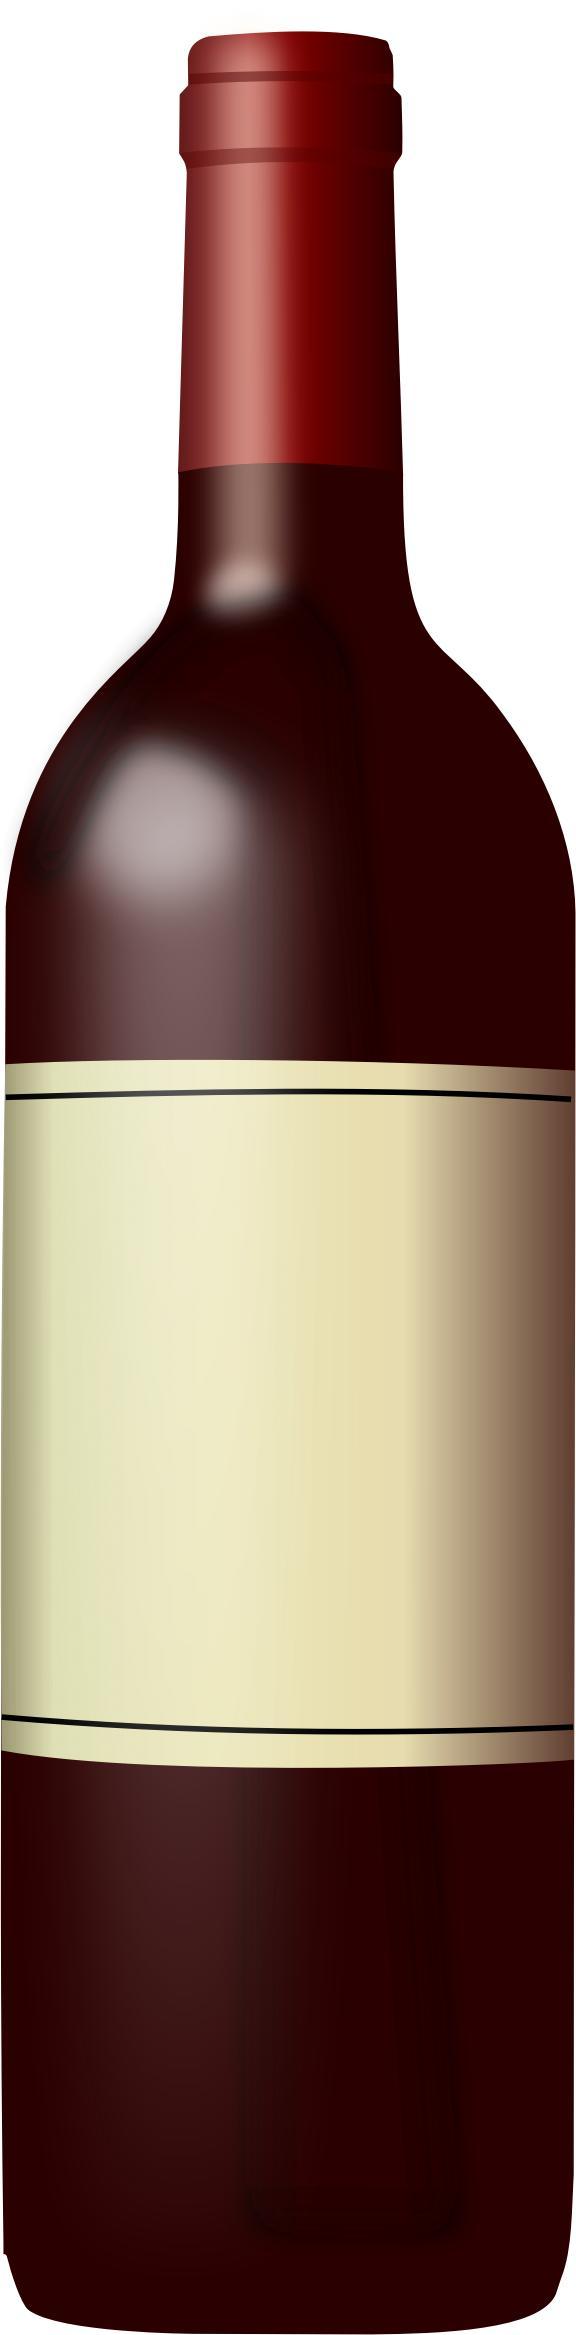 Wine bottle 2 (red) png transparent